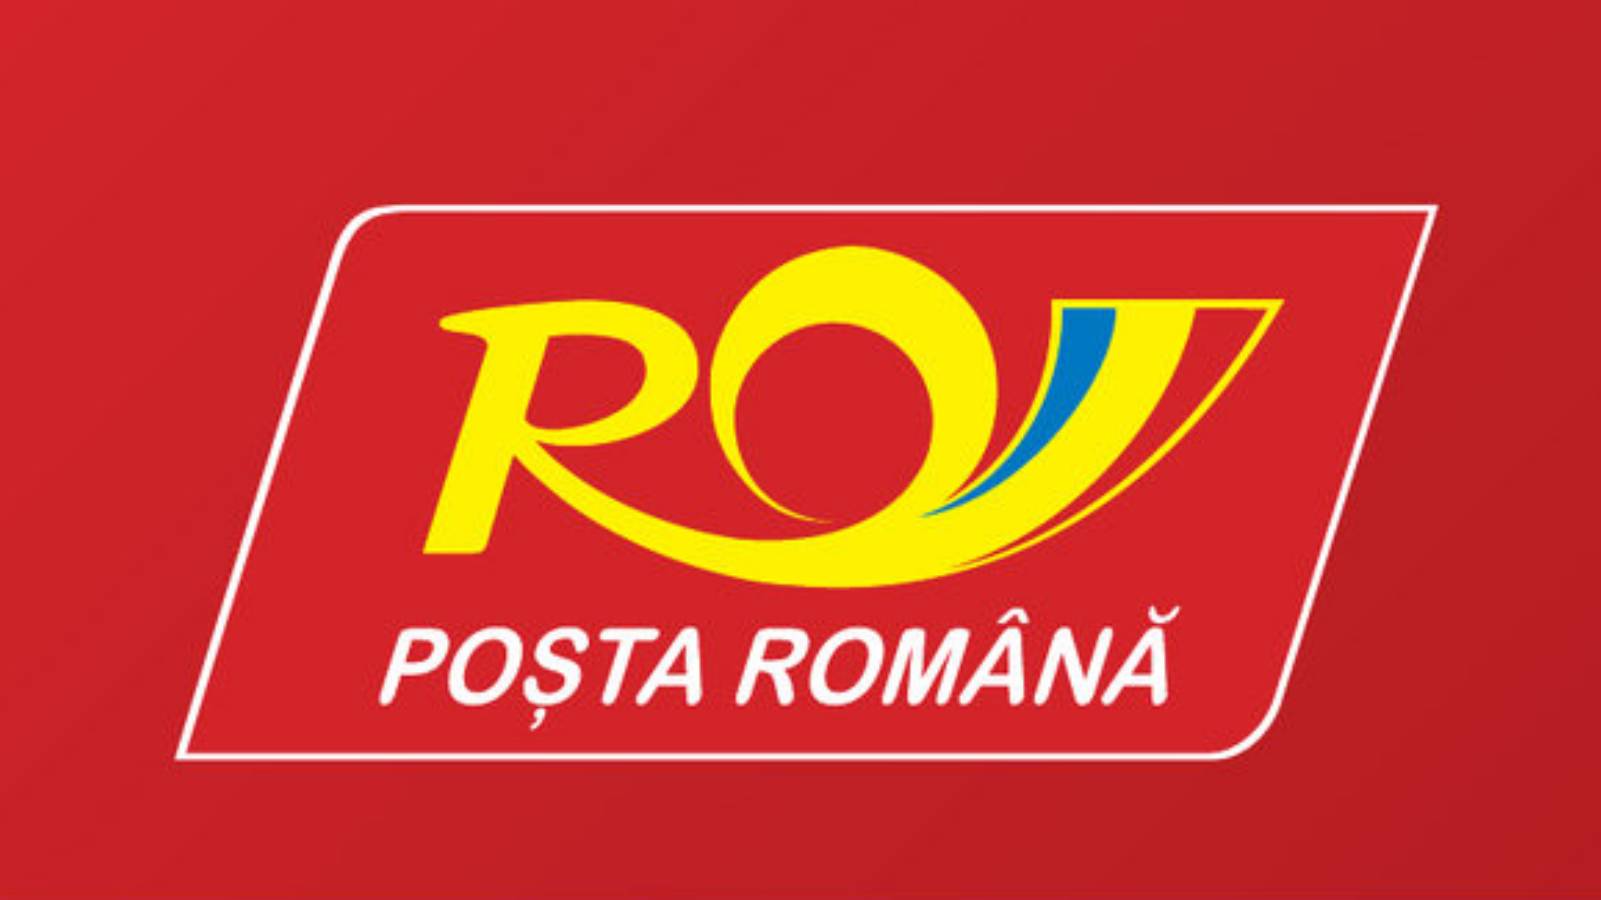 Tasa del permiso de correos rumano